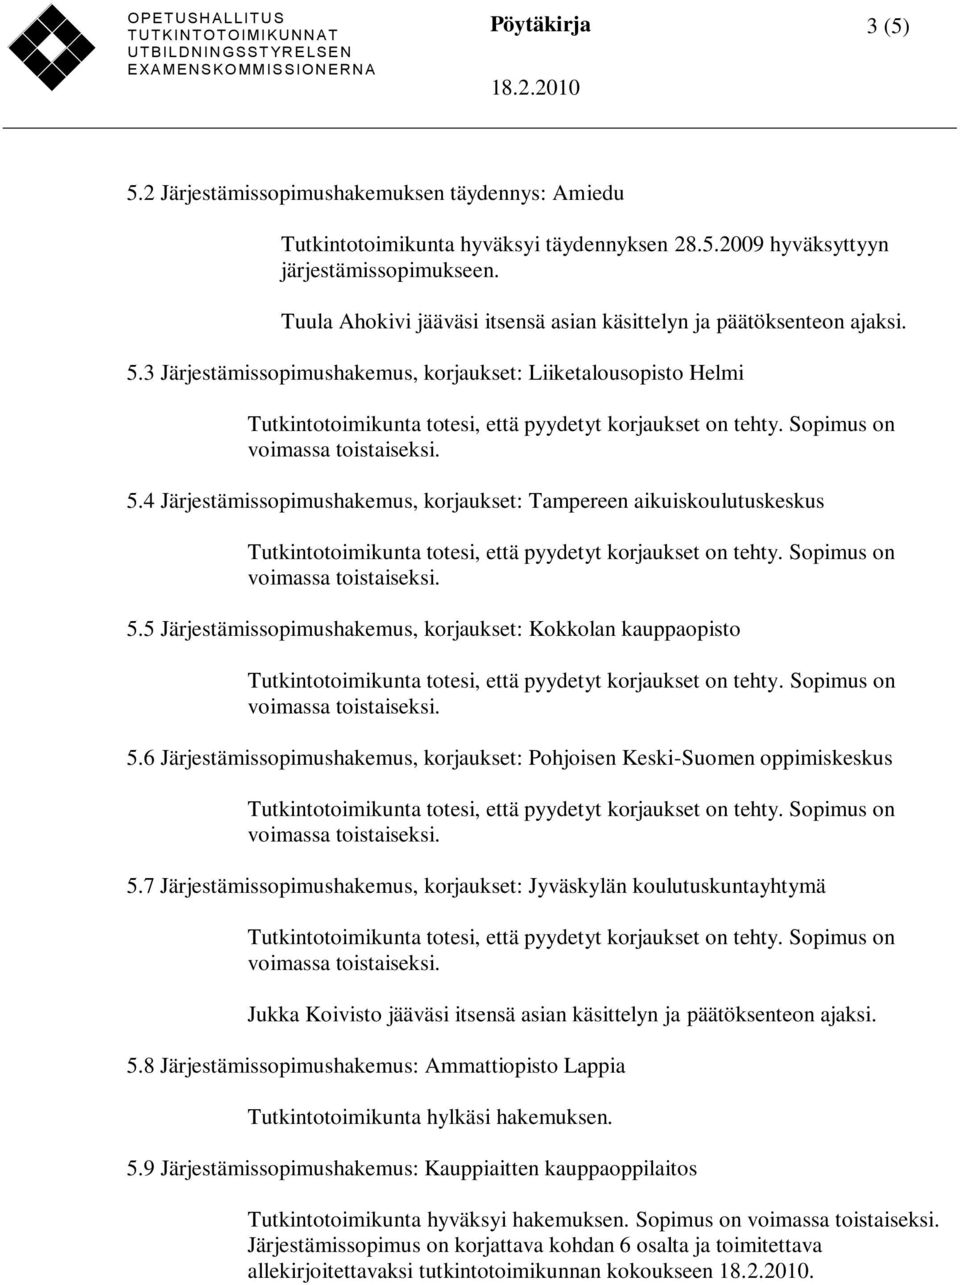 4 Järjestämissopimushakemus, korjaukset: Tampereen aikuiskoulutuskeskus 5.5 Järjestämissopimushakemus, korjaukset: Kokkolan kauppaopisto 5.